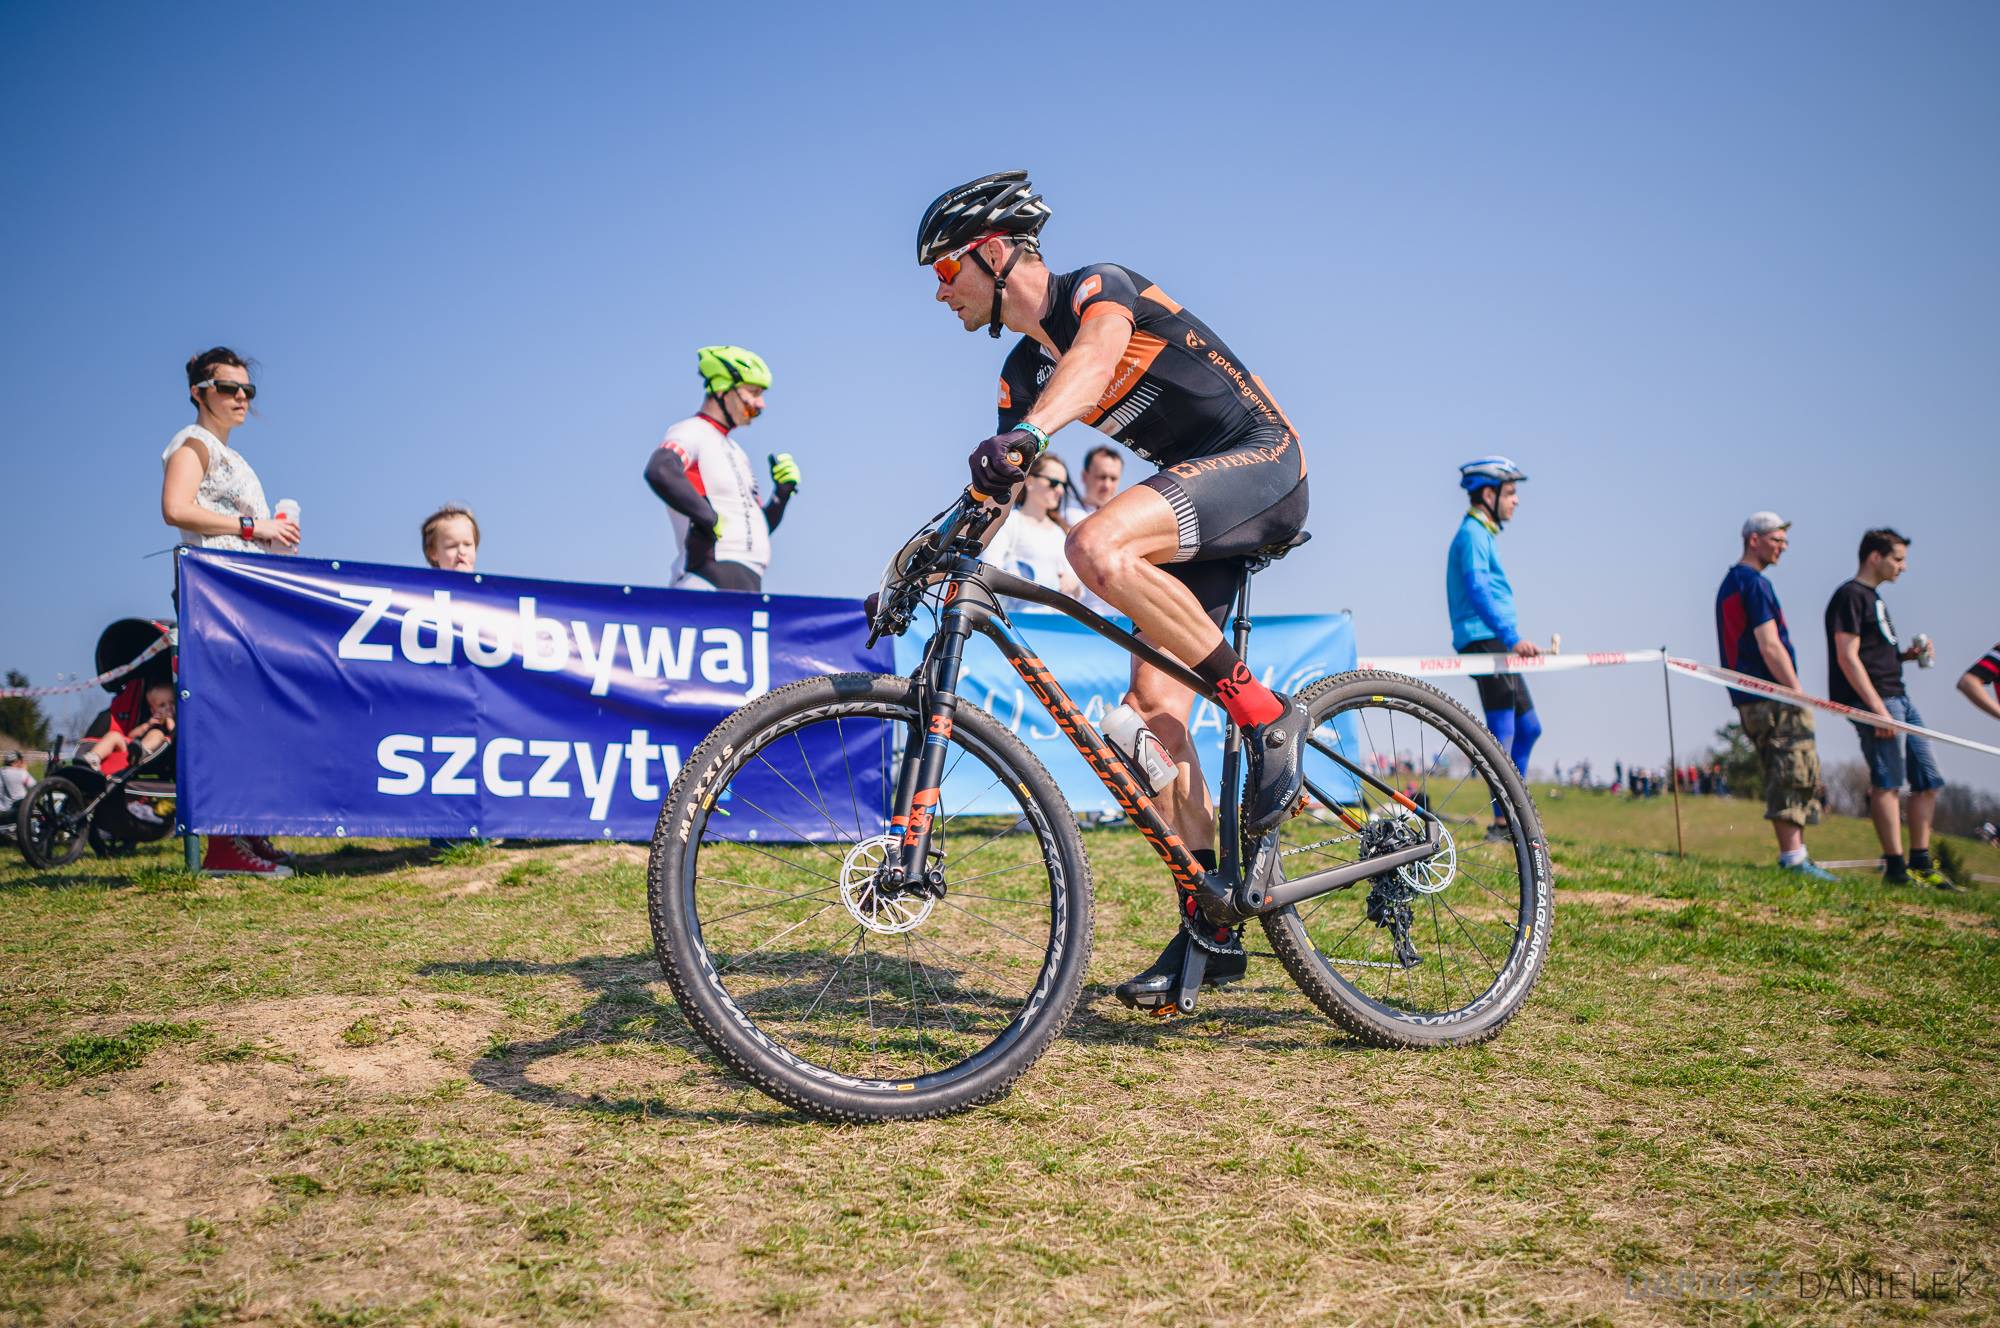 Michał Bogdziewicz (Apteka Gemini Team) – Kujawia XC, Bydgoszcz